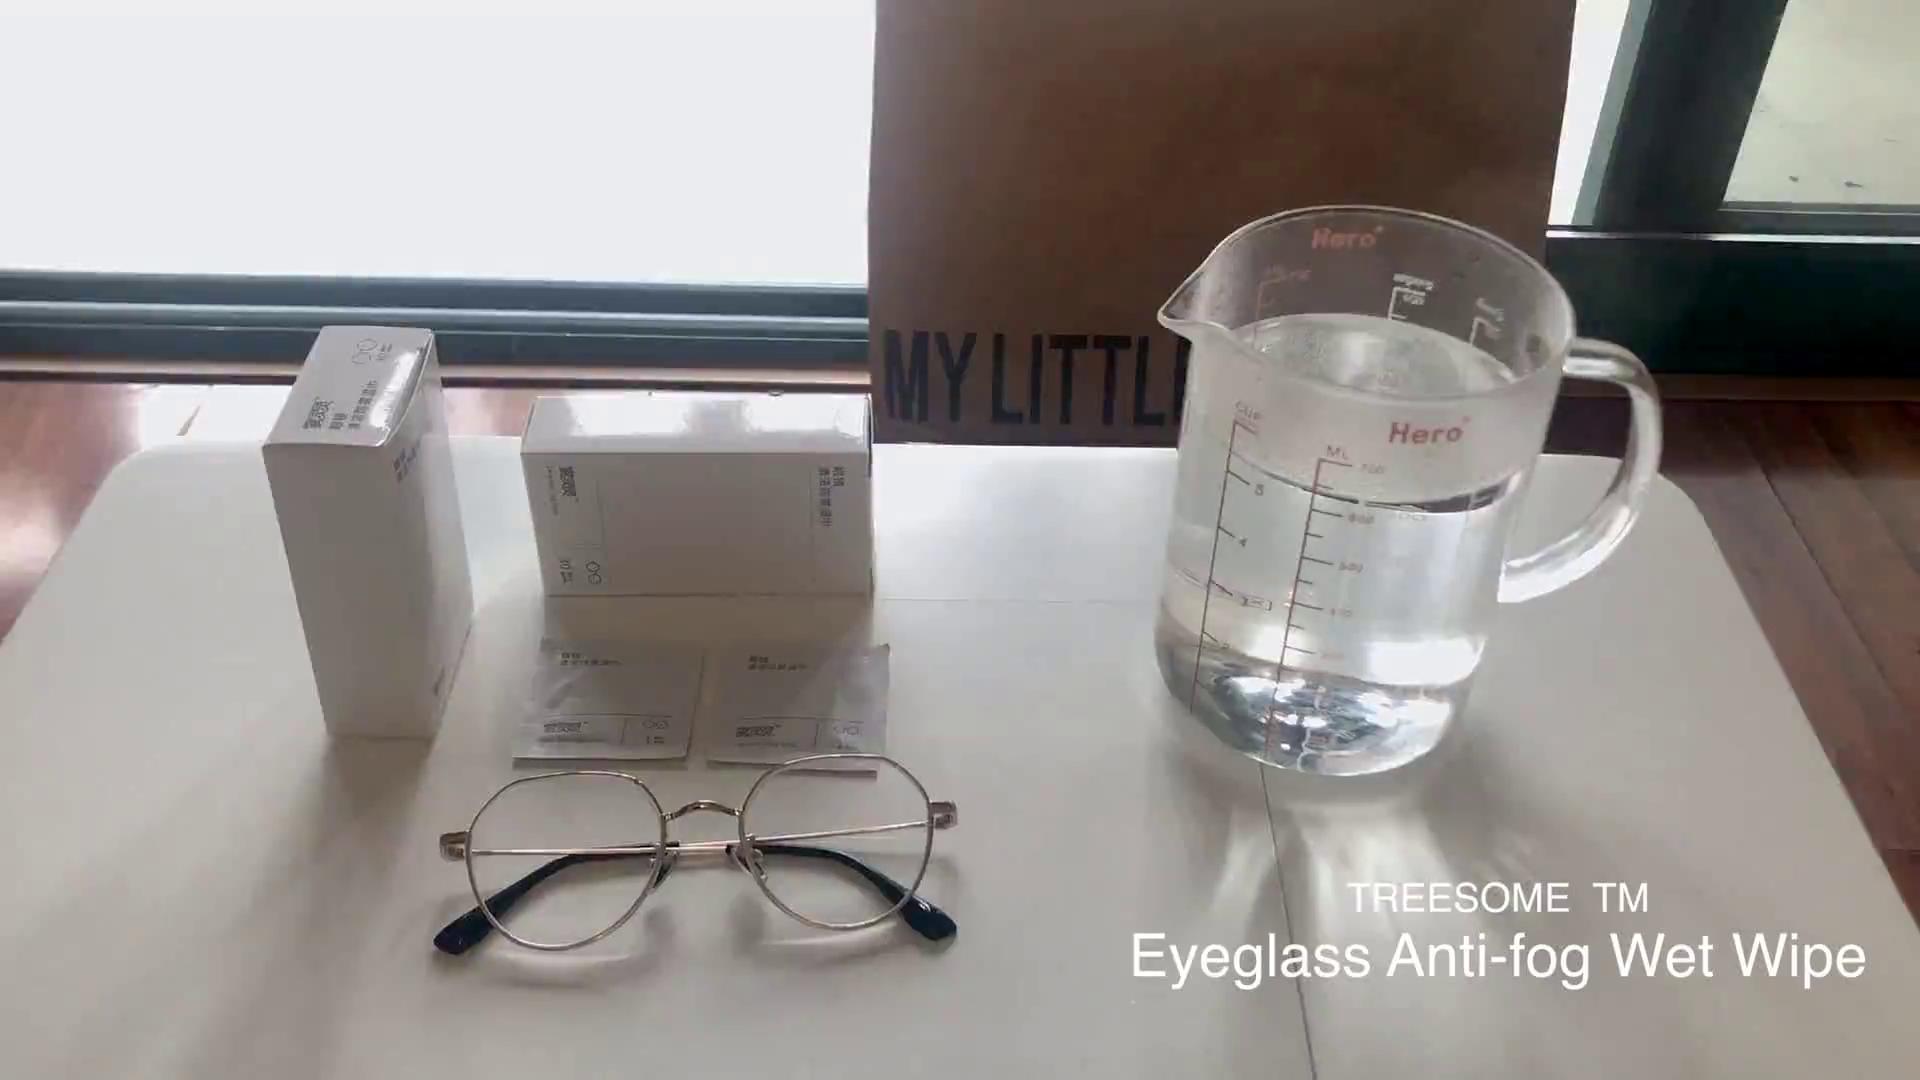 Eyeglass Antifog Wet Wipe, Helmet Visor Anti Fog Wet Tissue, Lens Cleaning, Defog, TreeSome